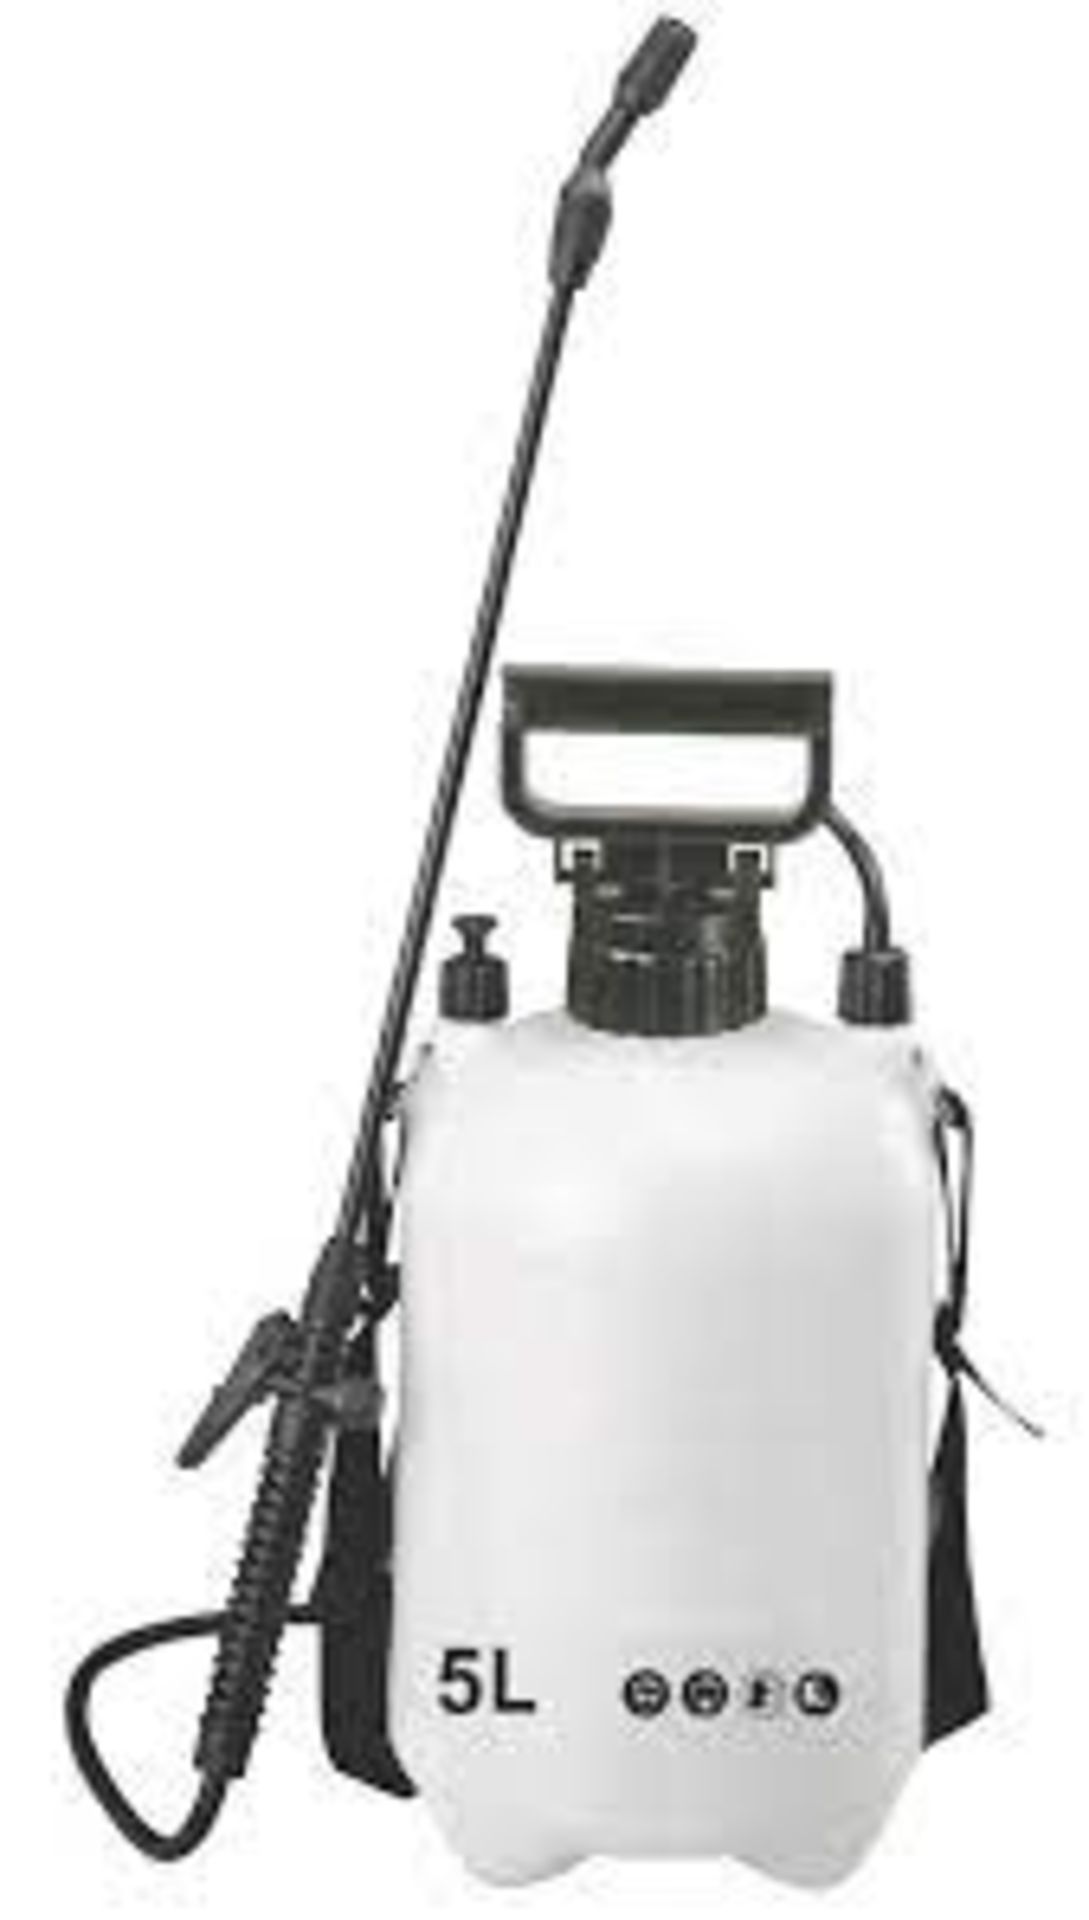 SX-CS5 WHITE / BLACK PRESSURE SPRAYER 5LTR. - ER46. Pressure sprayer suitable for a variety of